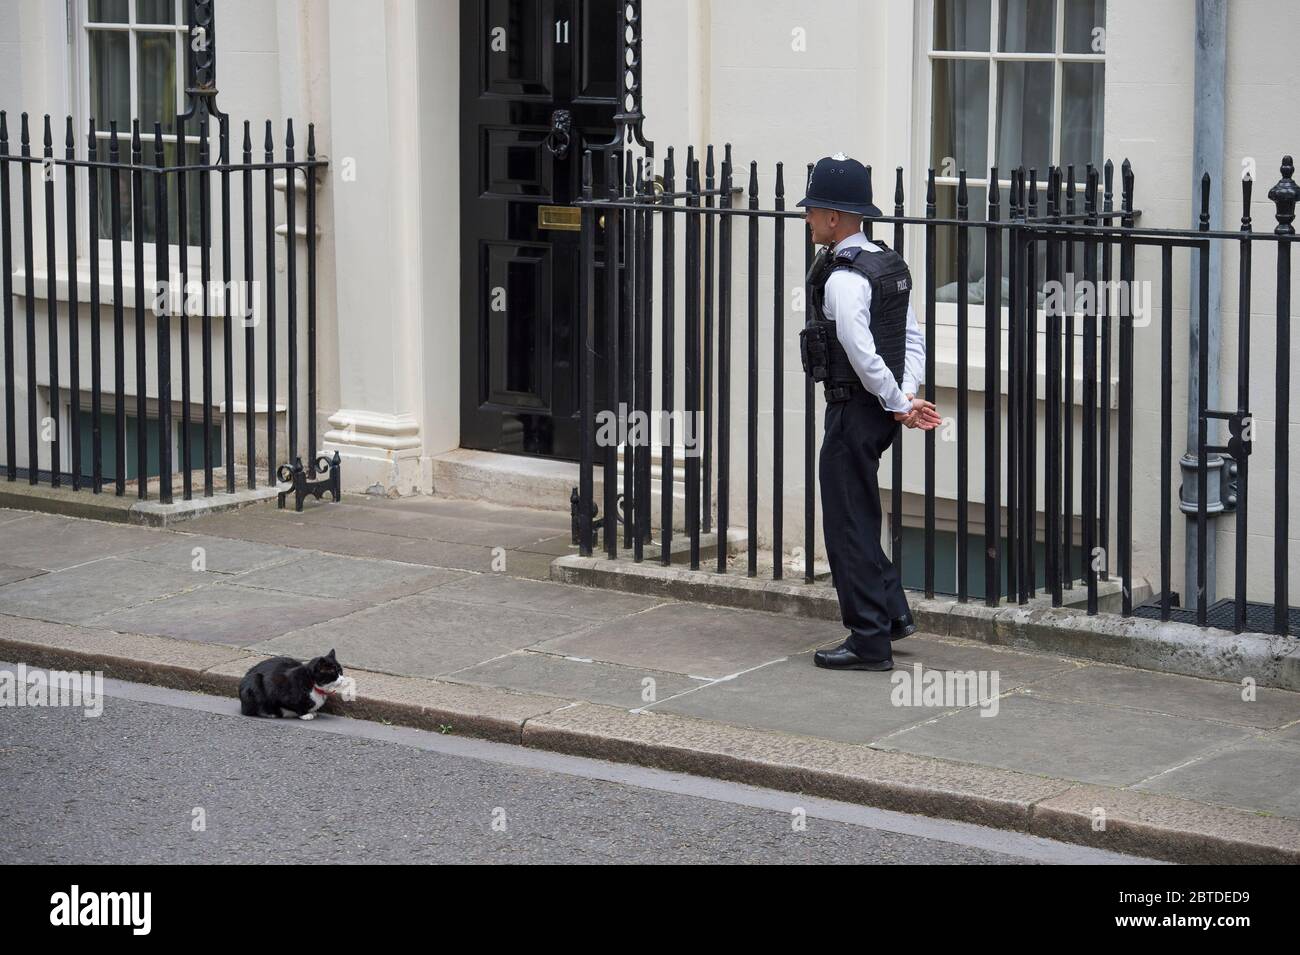 Ufficiale di polizia in servizio fuori 10 Downing Street guarda Palmerston, capo Mouser al Foreign & Commonwealth Office a Whitehall, Londra, Regno Unito Foto Stock